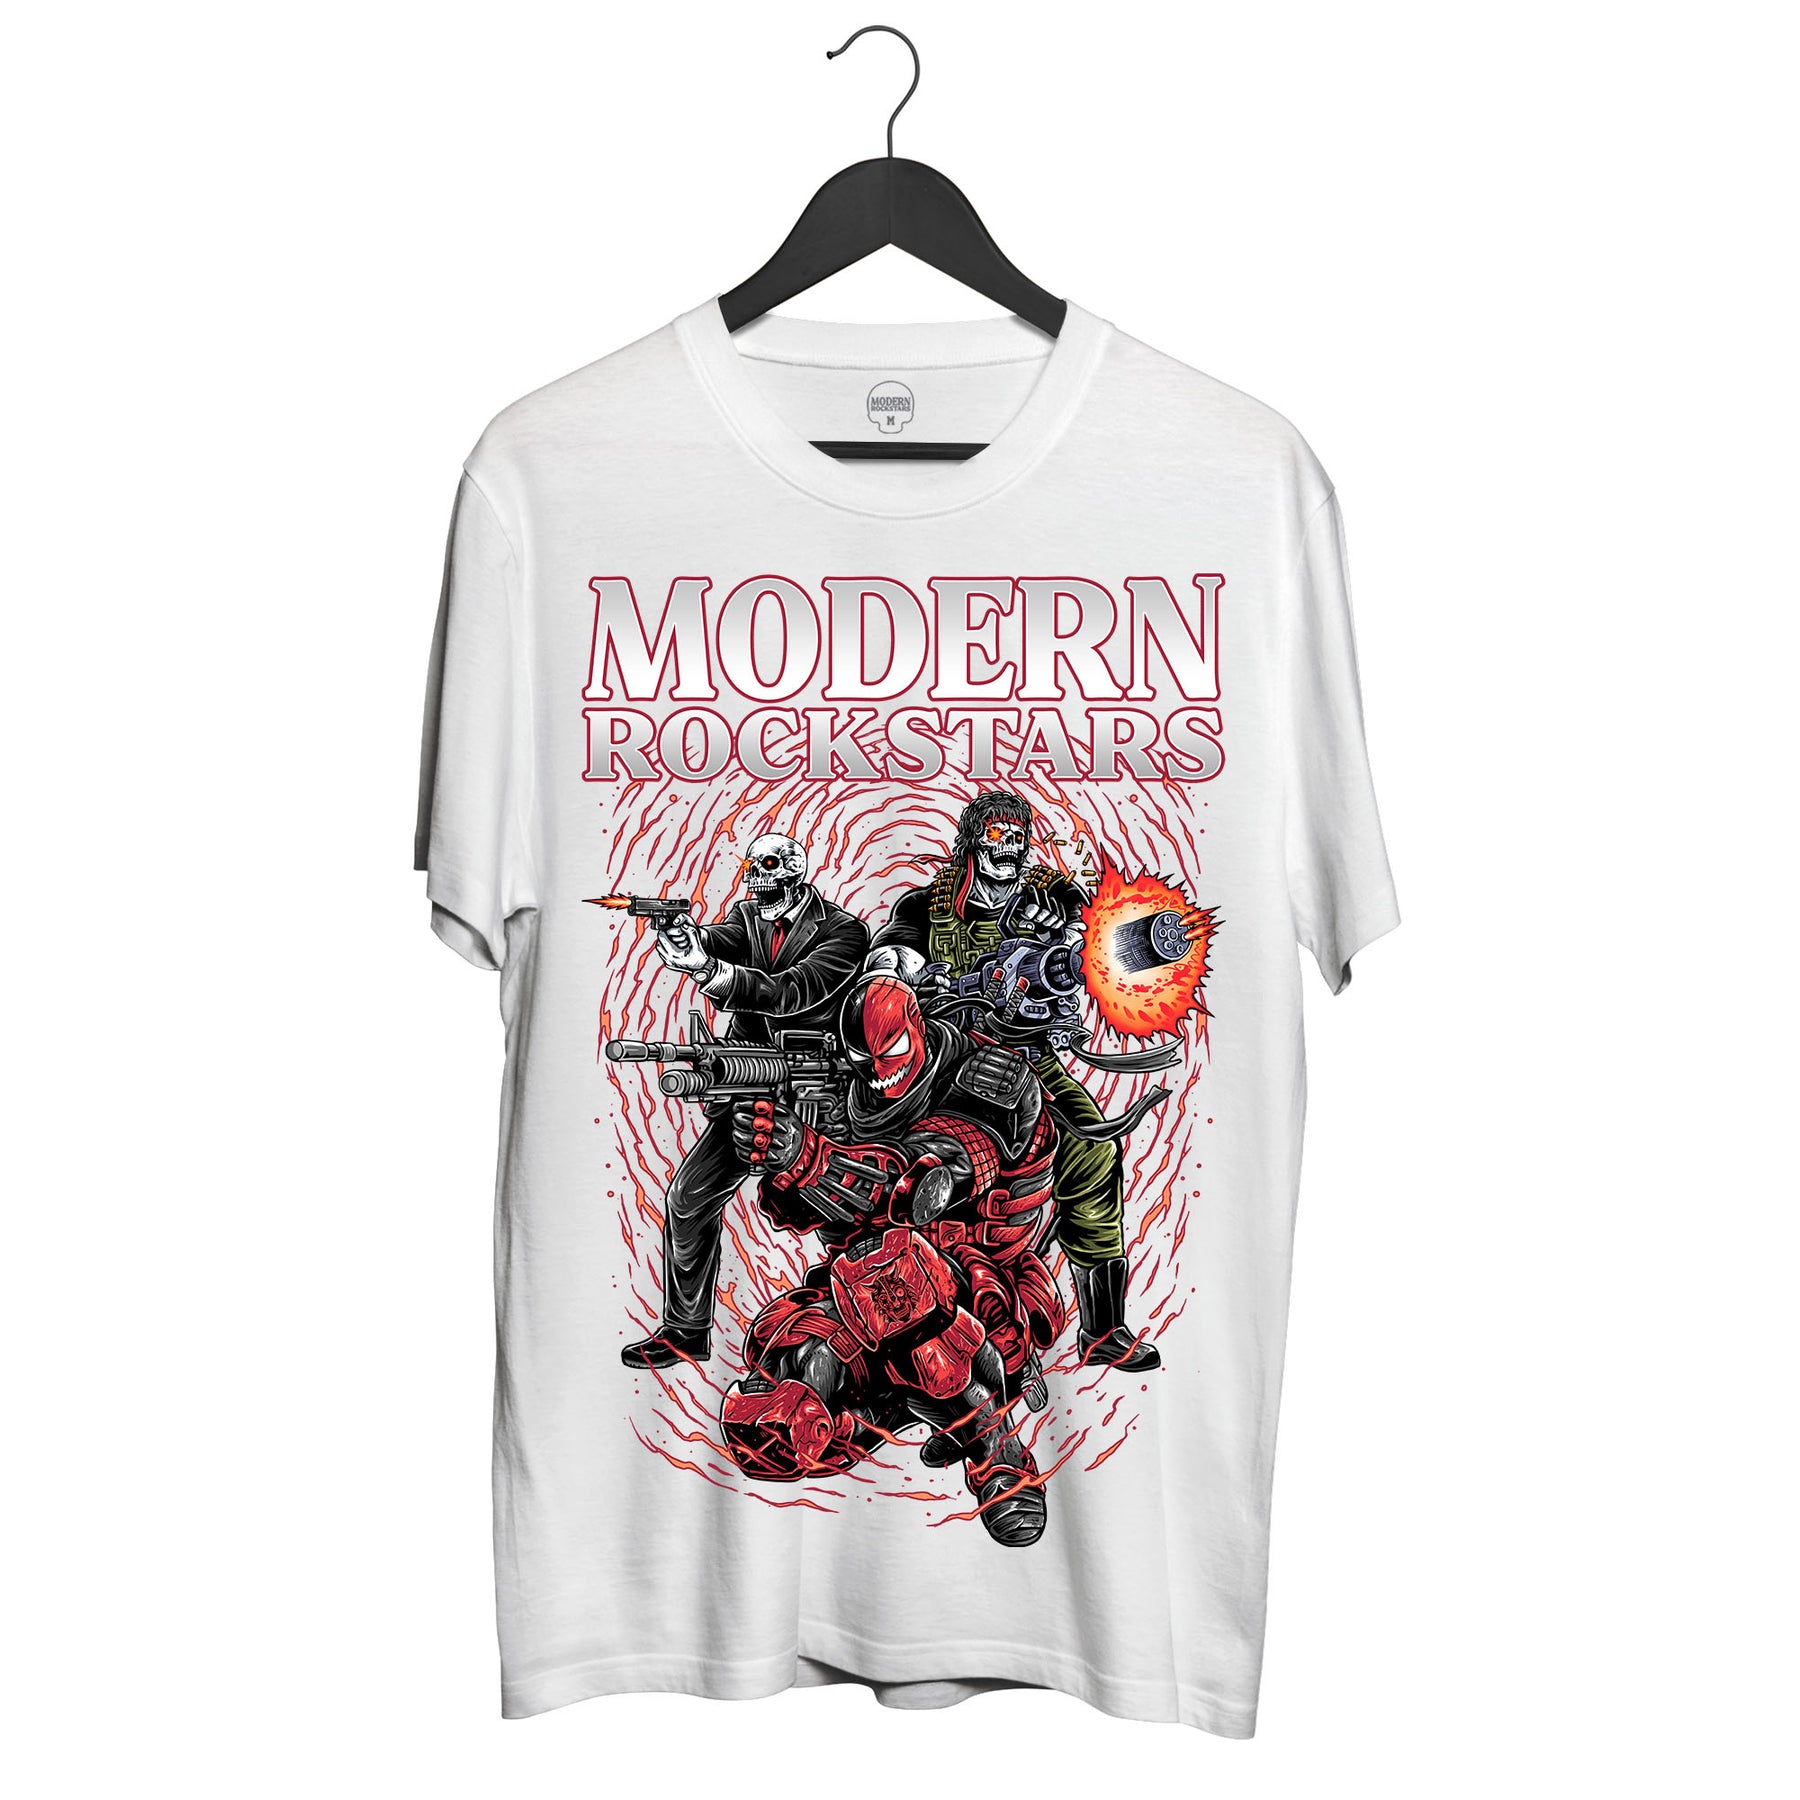 The Shooters T-Shirt - Modern Rockstars